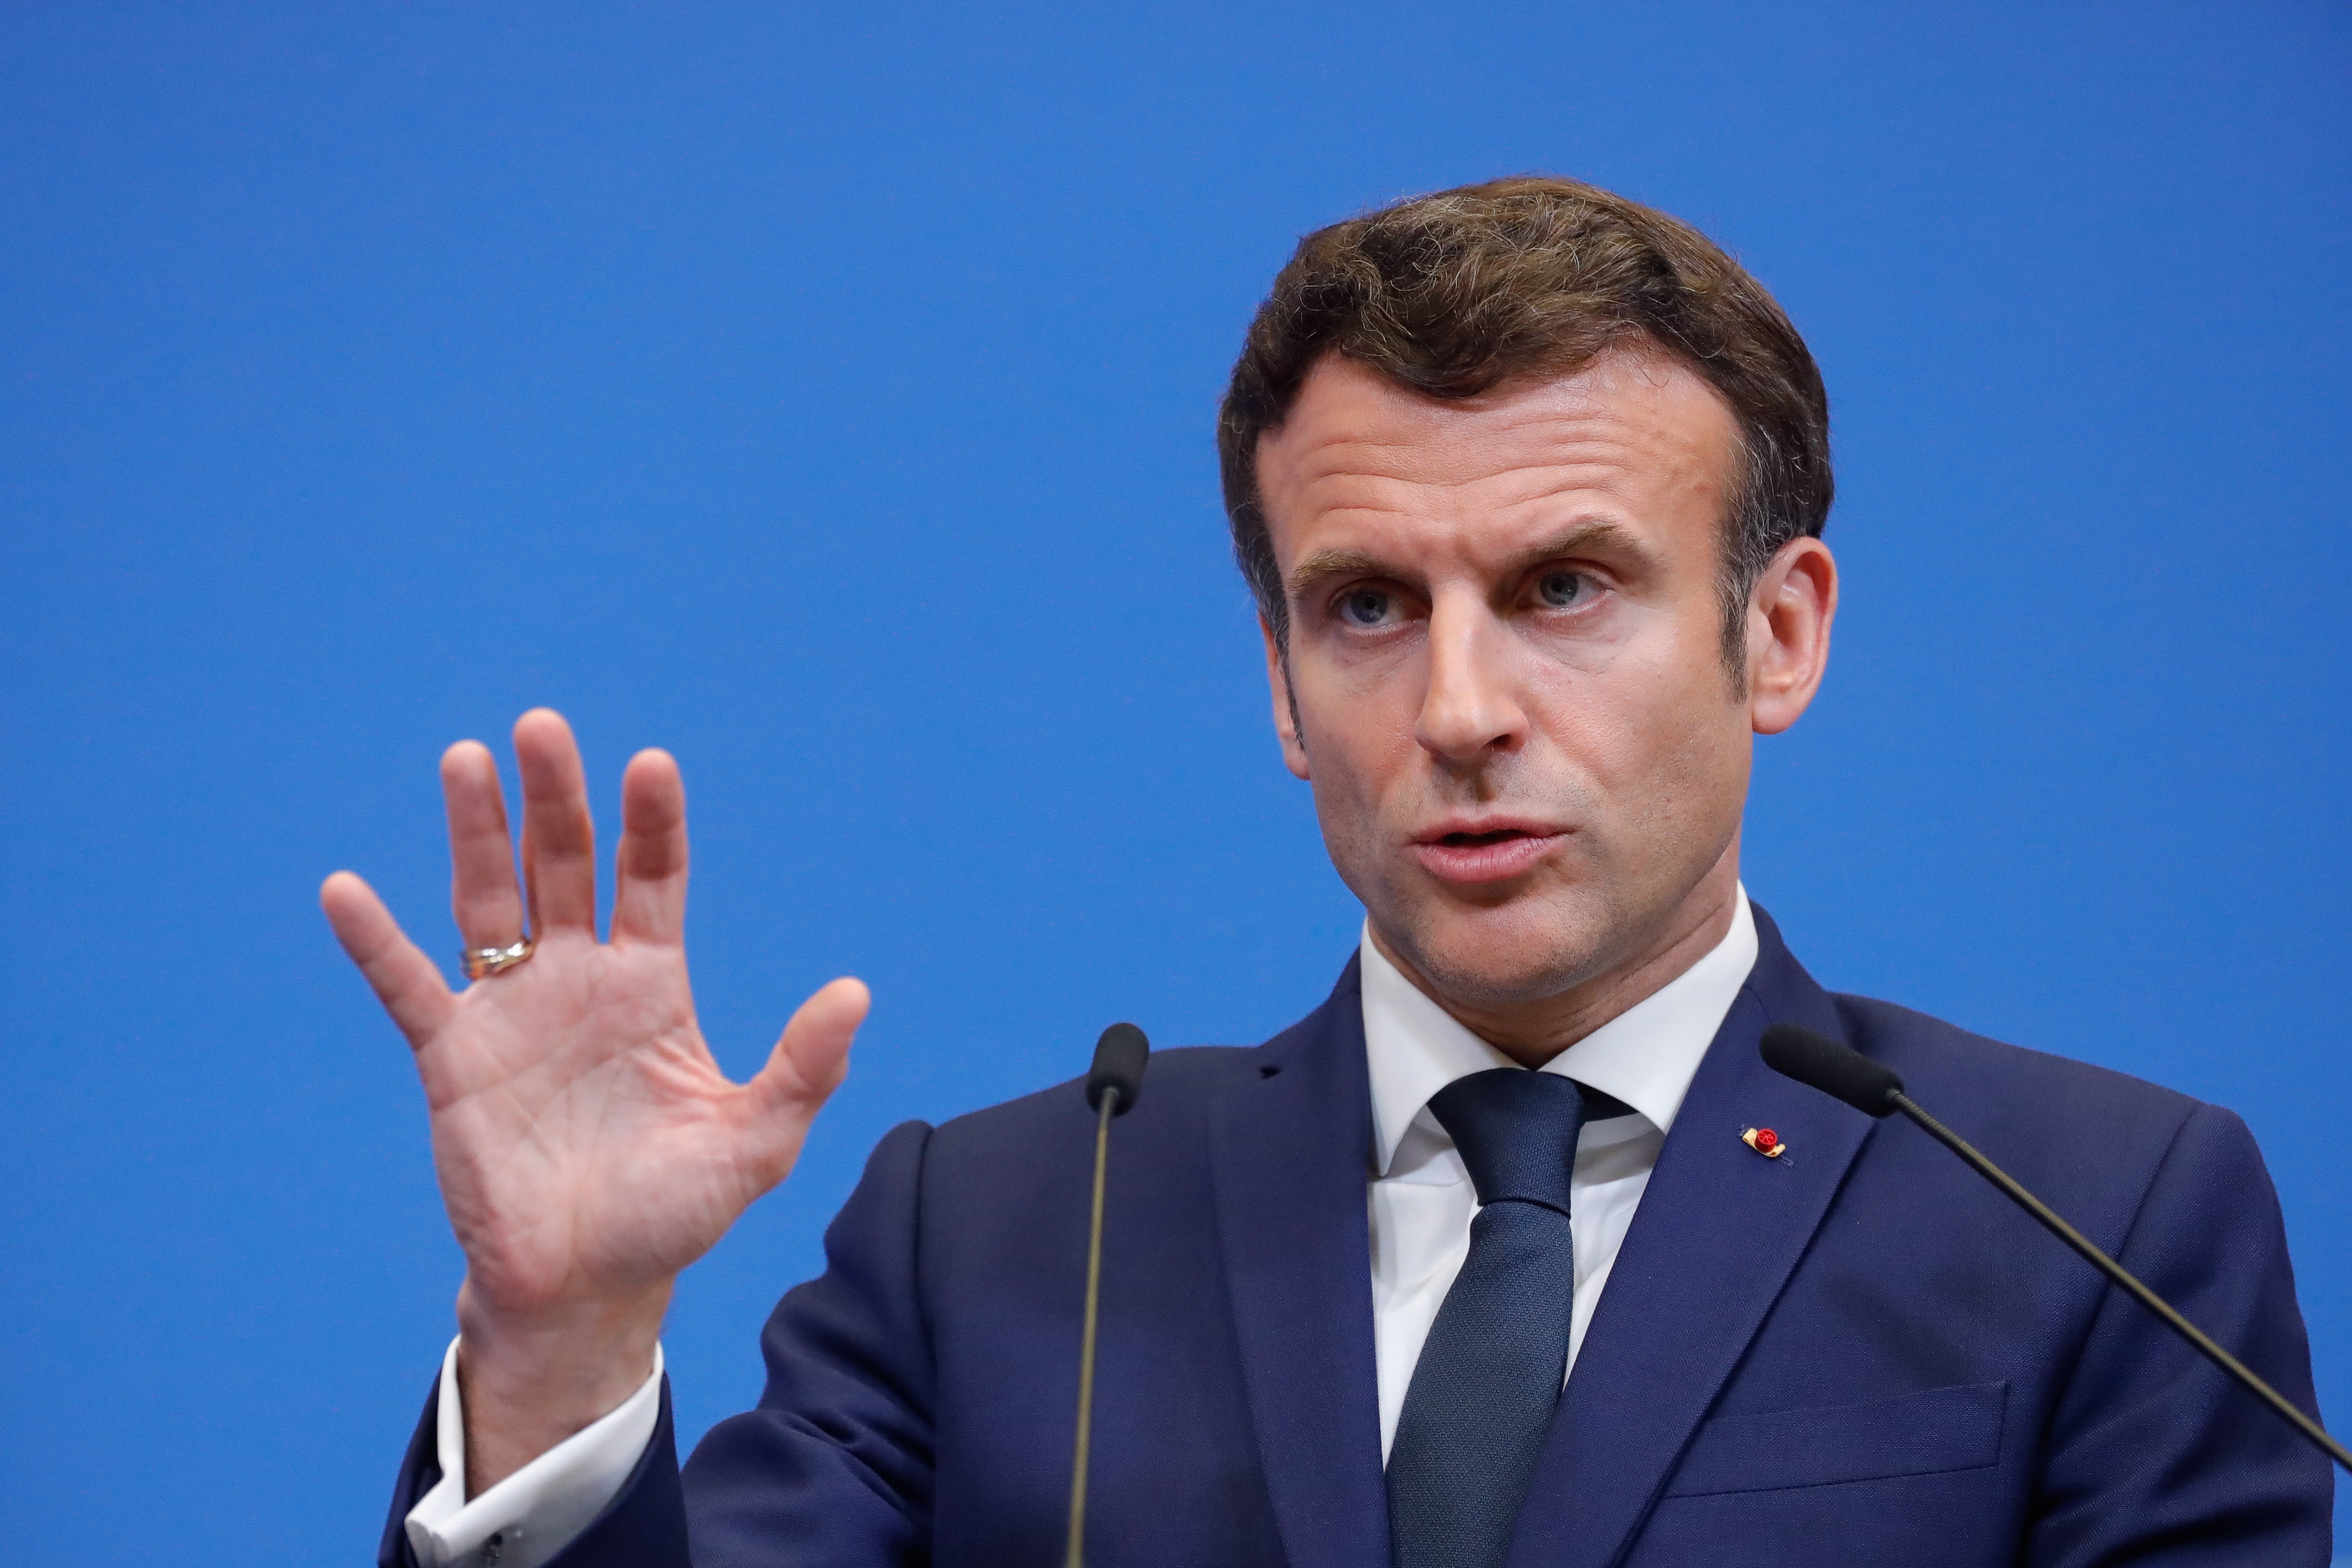 La foto de pecho de Emmanuel Macron pone Francia patas arriba